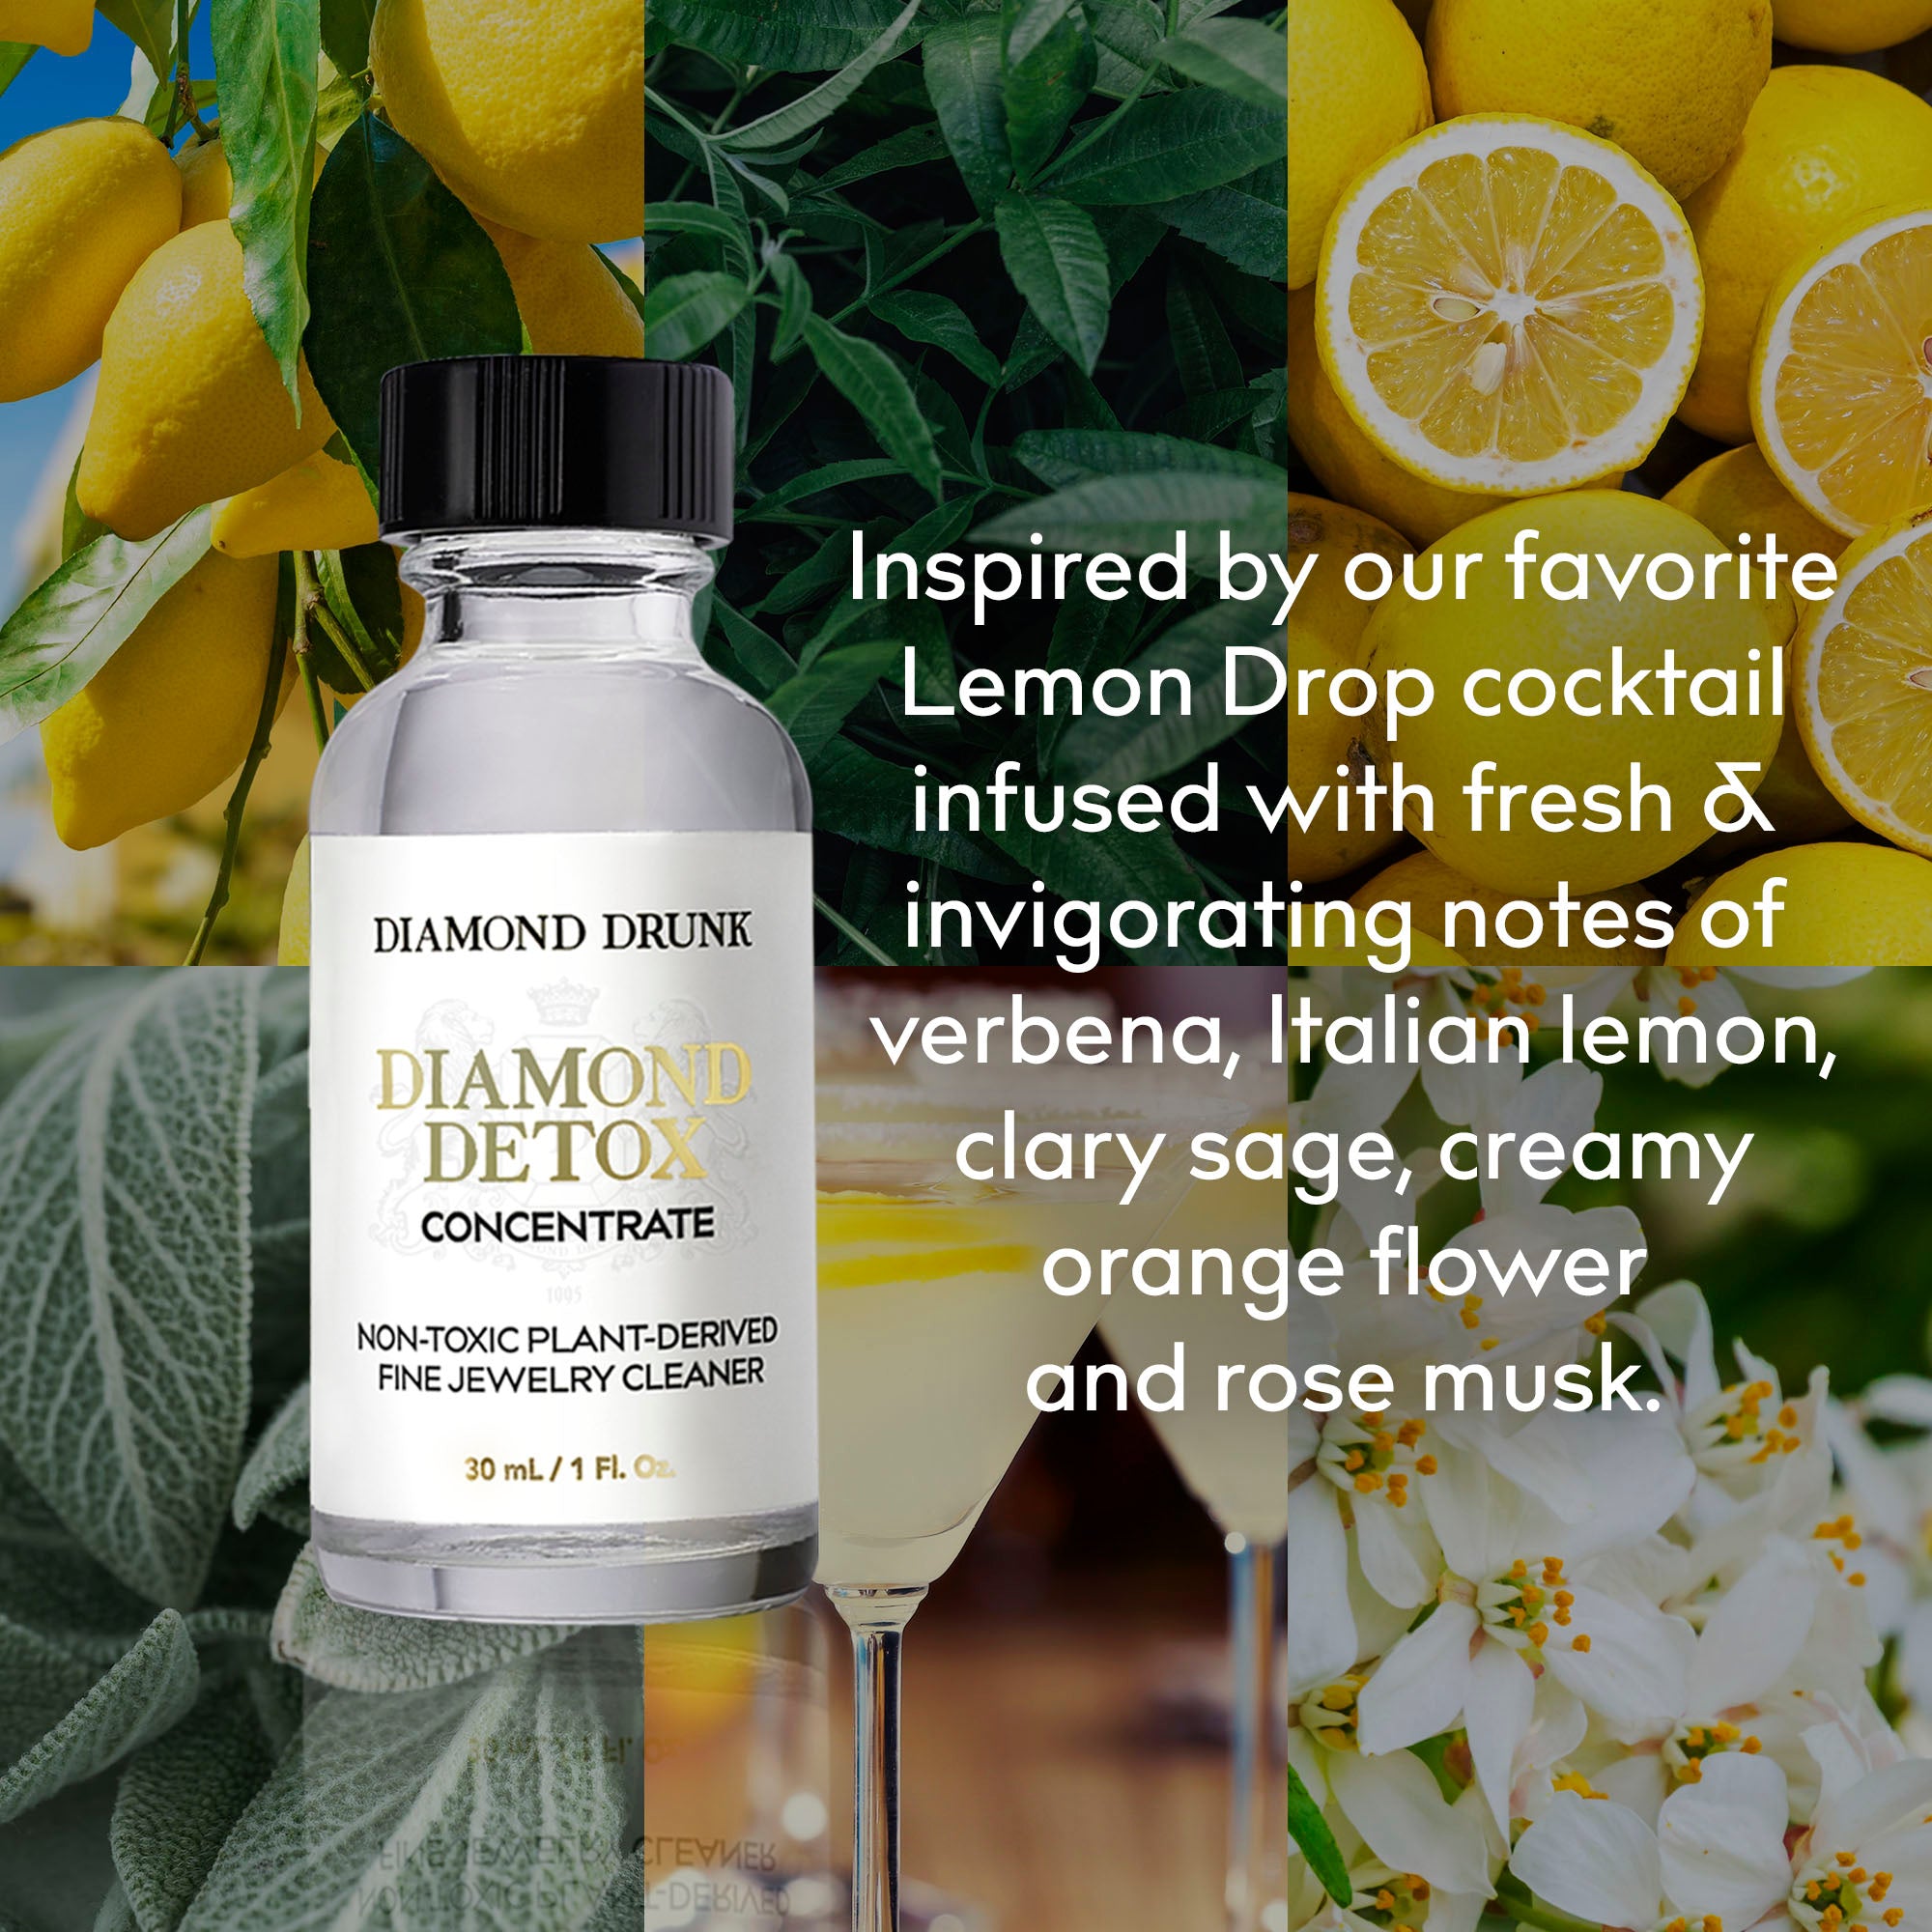 Diamond Detox Concentrate Lemon Drop